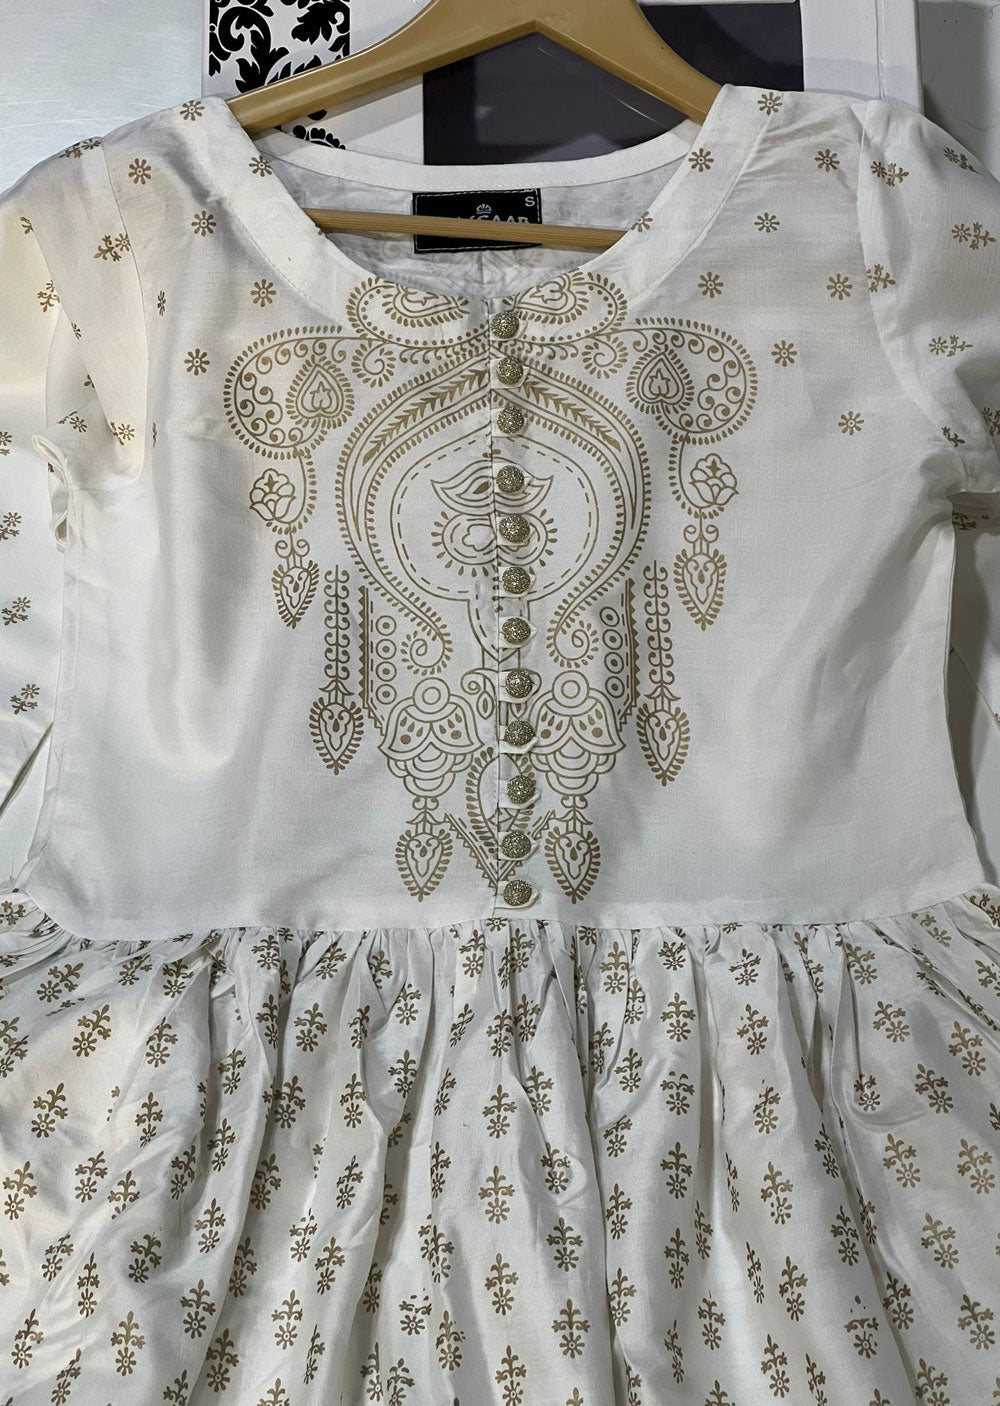 HK245 Gavinchi - White Readymade Mother & Daughter Dress - Memsaab Online